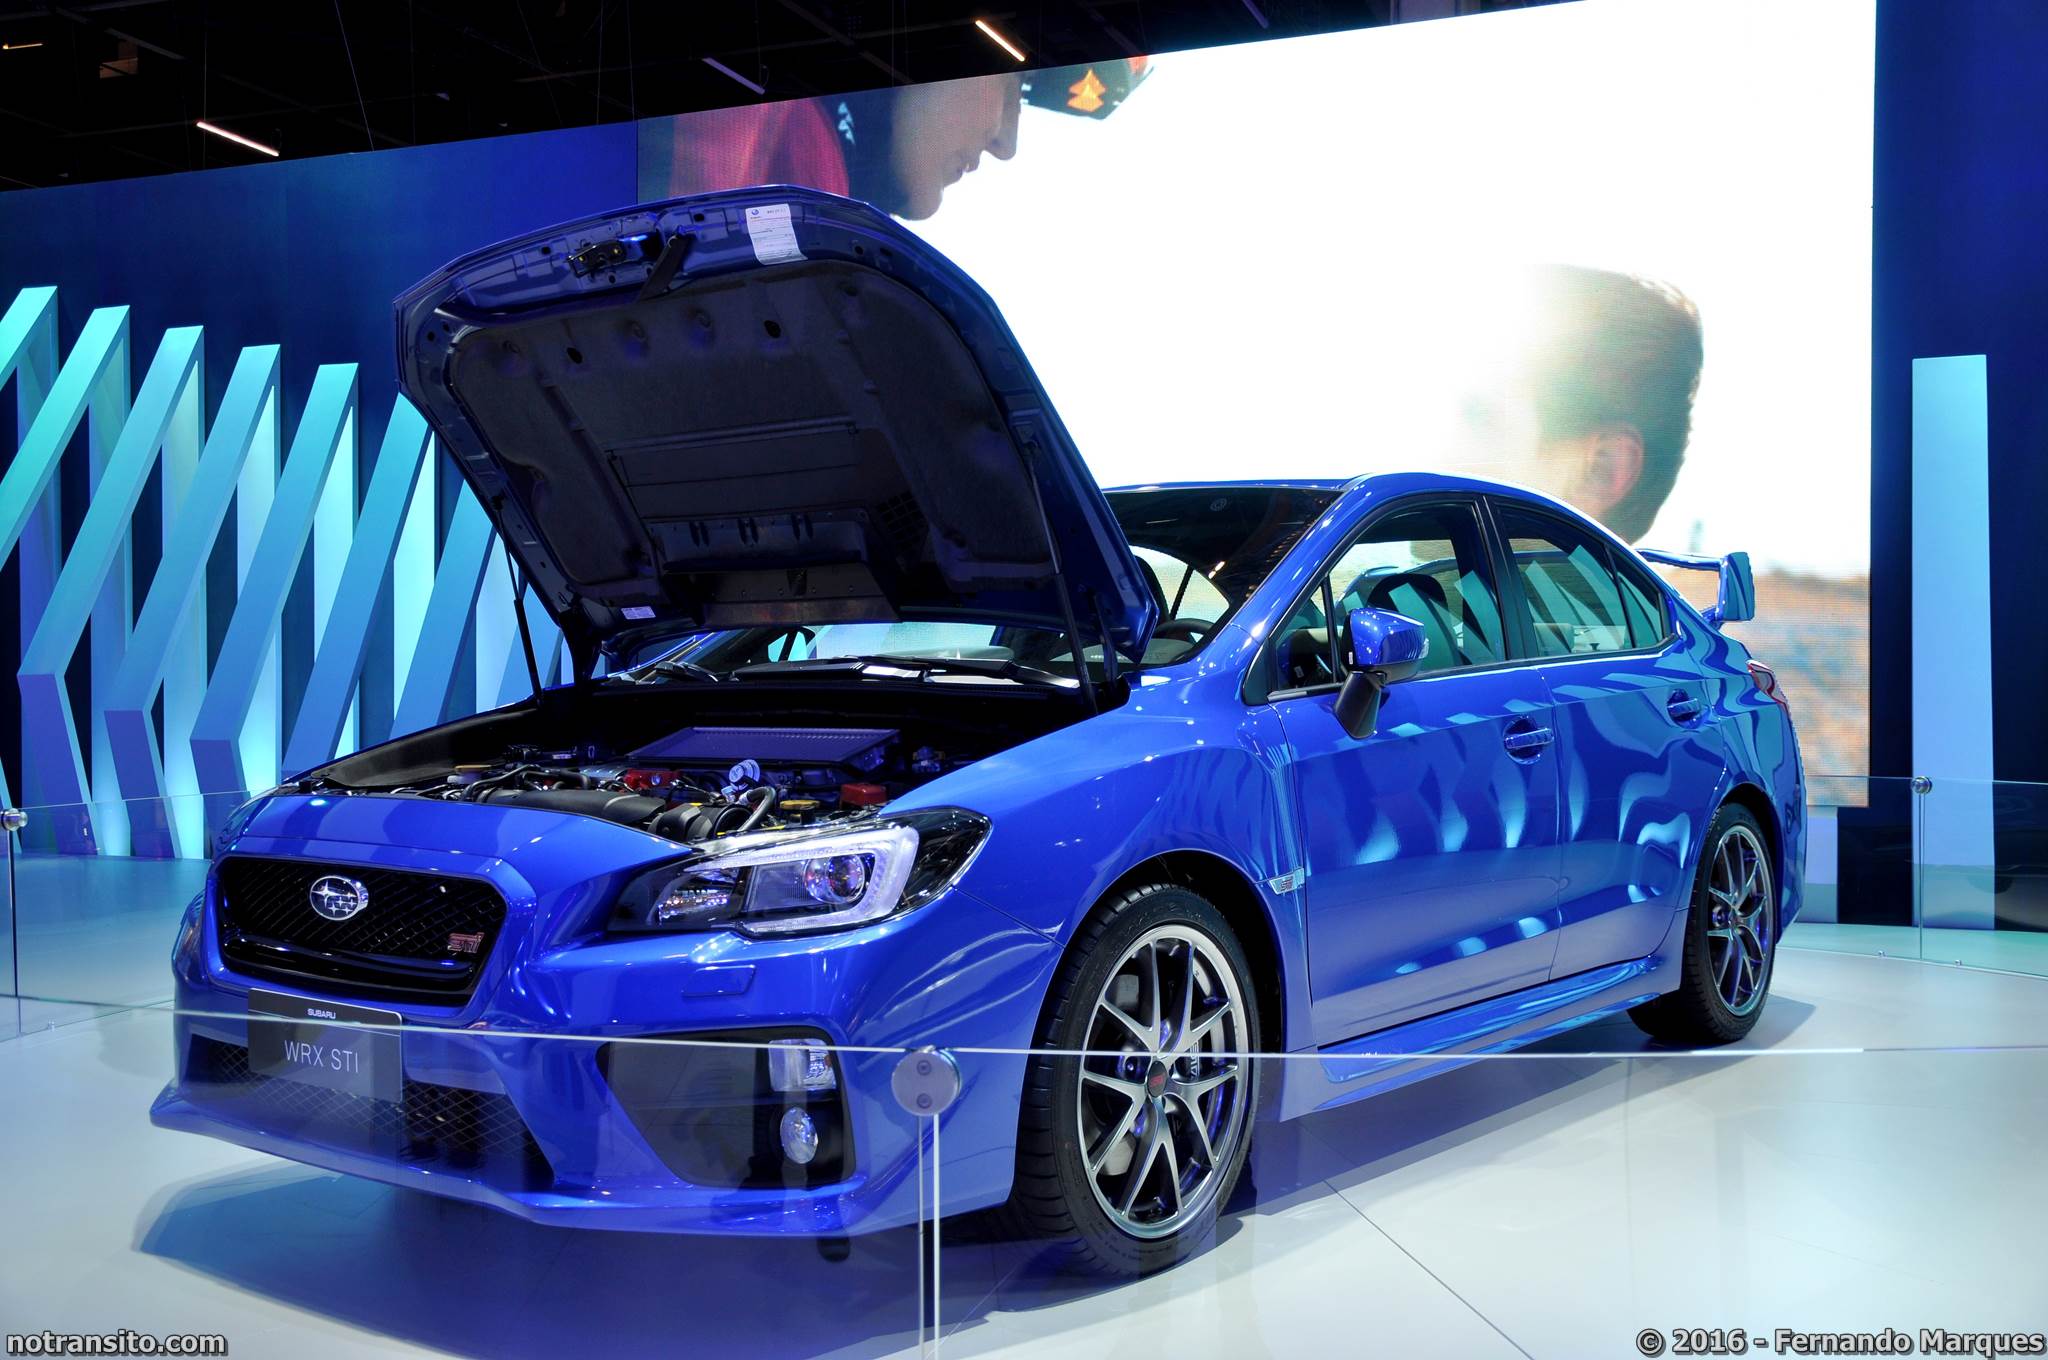 Estande Subaru Salão do Automóvel 2016